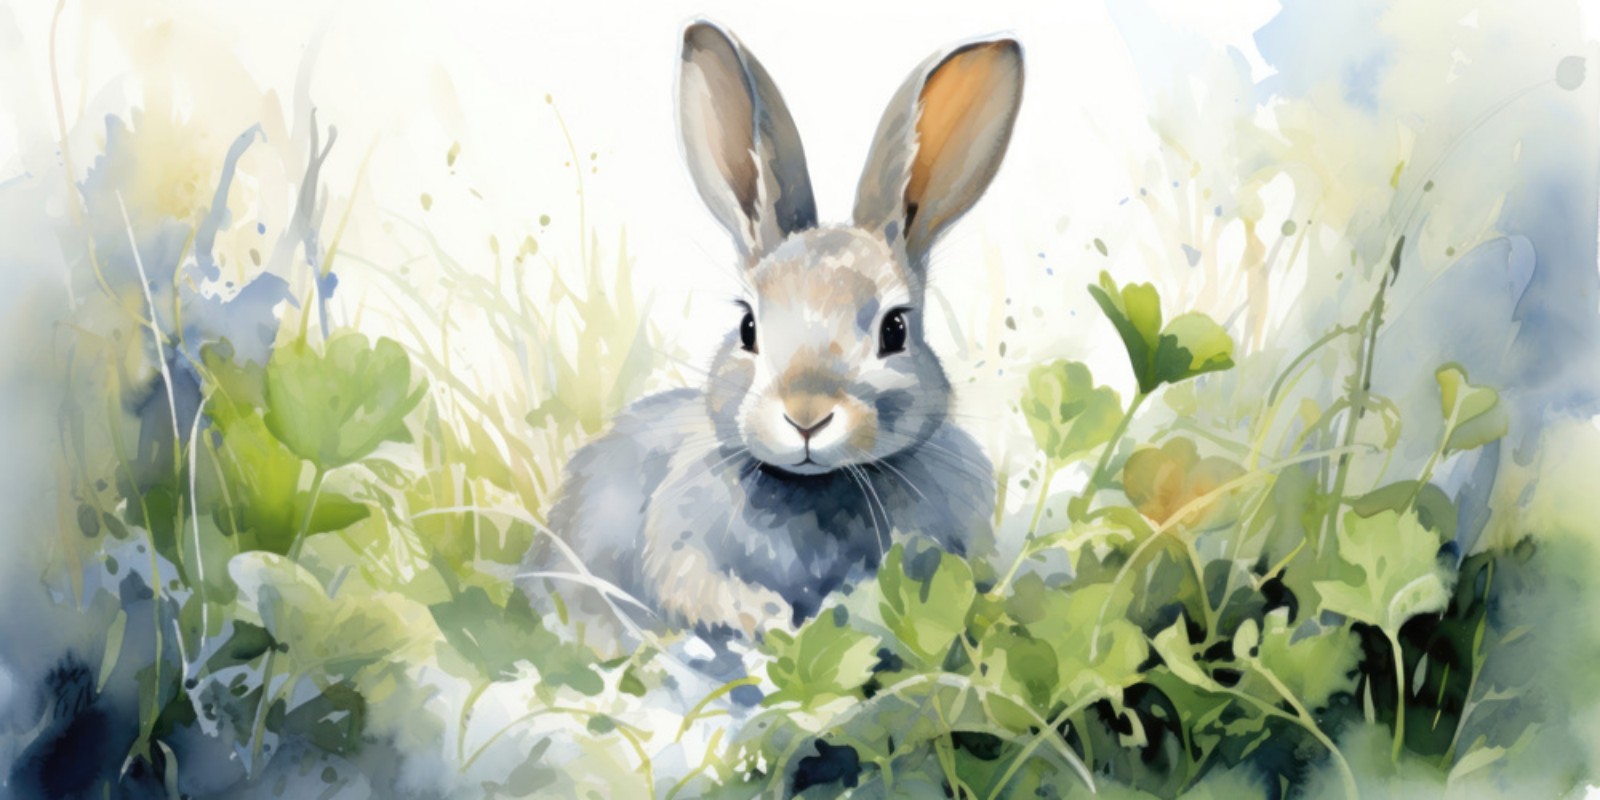 Afbeeldingen van Cute Rabbits